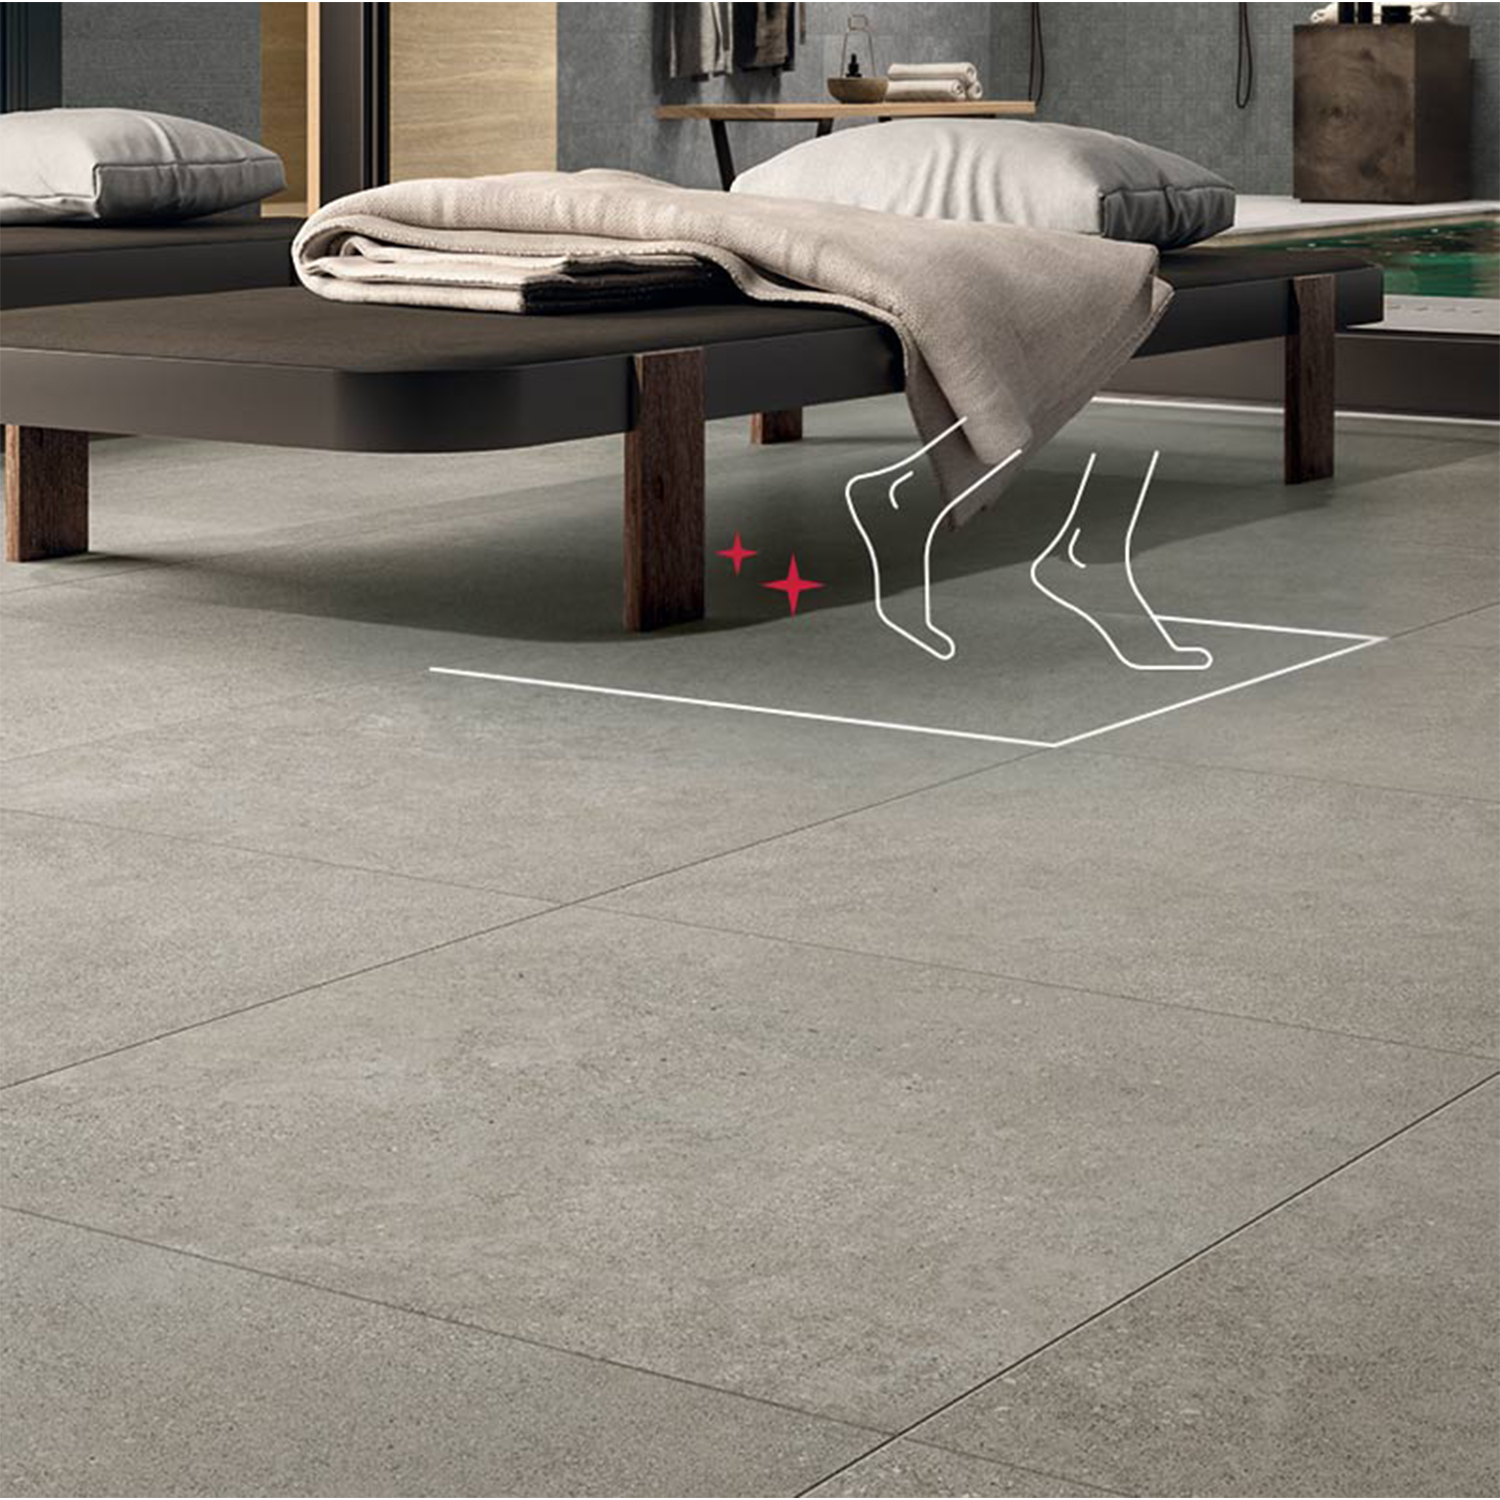 Anti Slip For Tile Floors – Flooring Tips